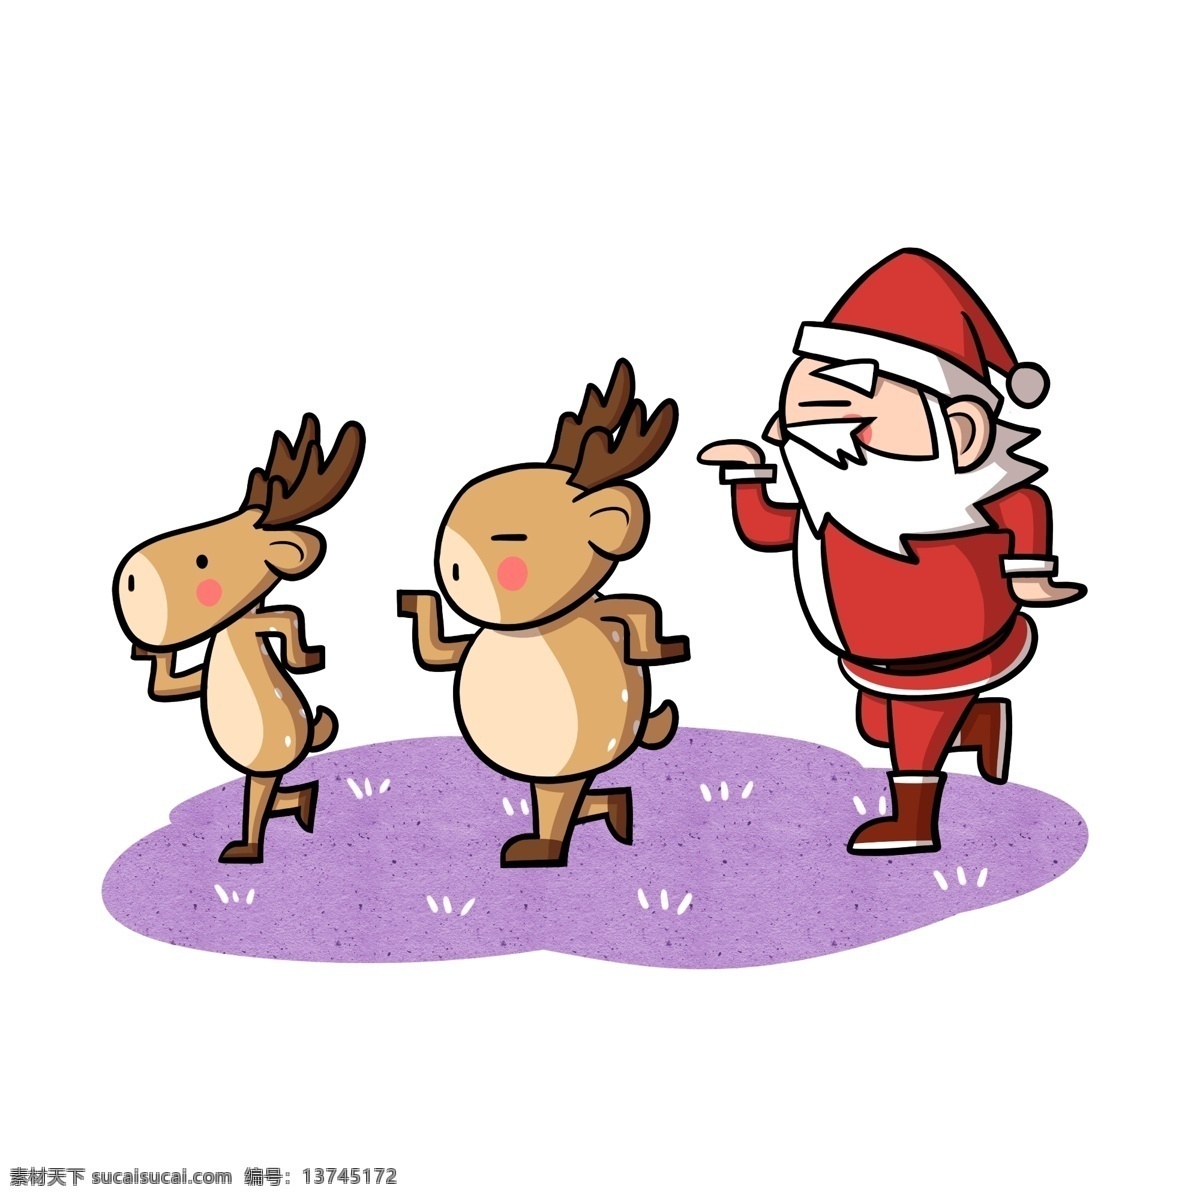 卡通 圣诞老人 驯鹿 跳舞 透明 底 christmas 卡通圣诞老人 卡通驯鹿 圣诞快乐 圣诞节快乐 圣诞节 冬季 节日